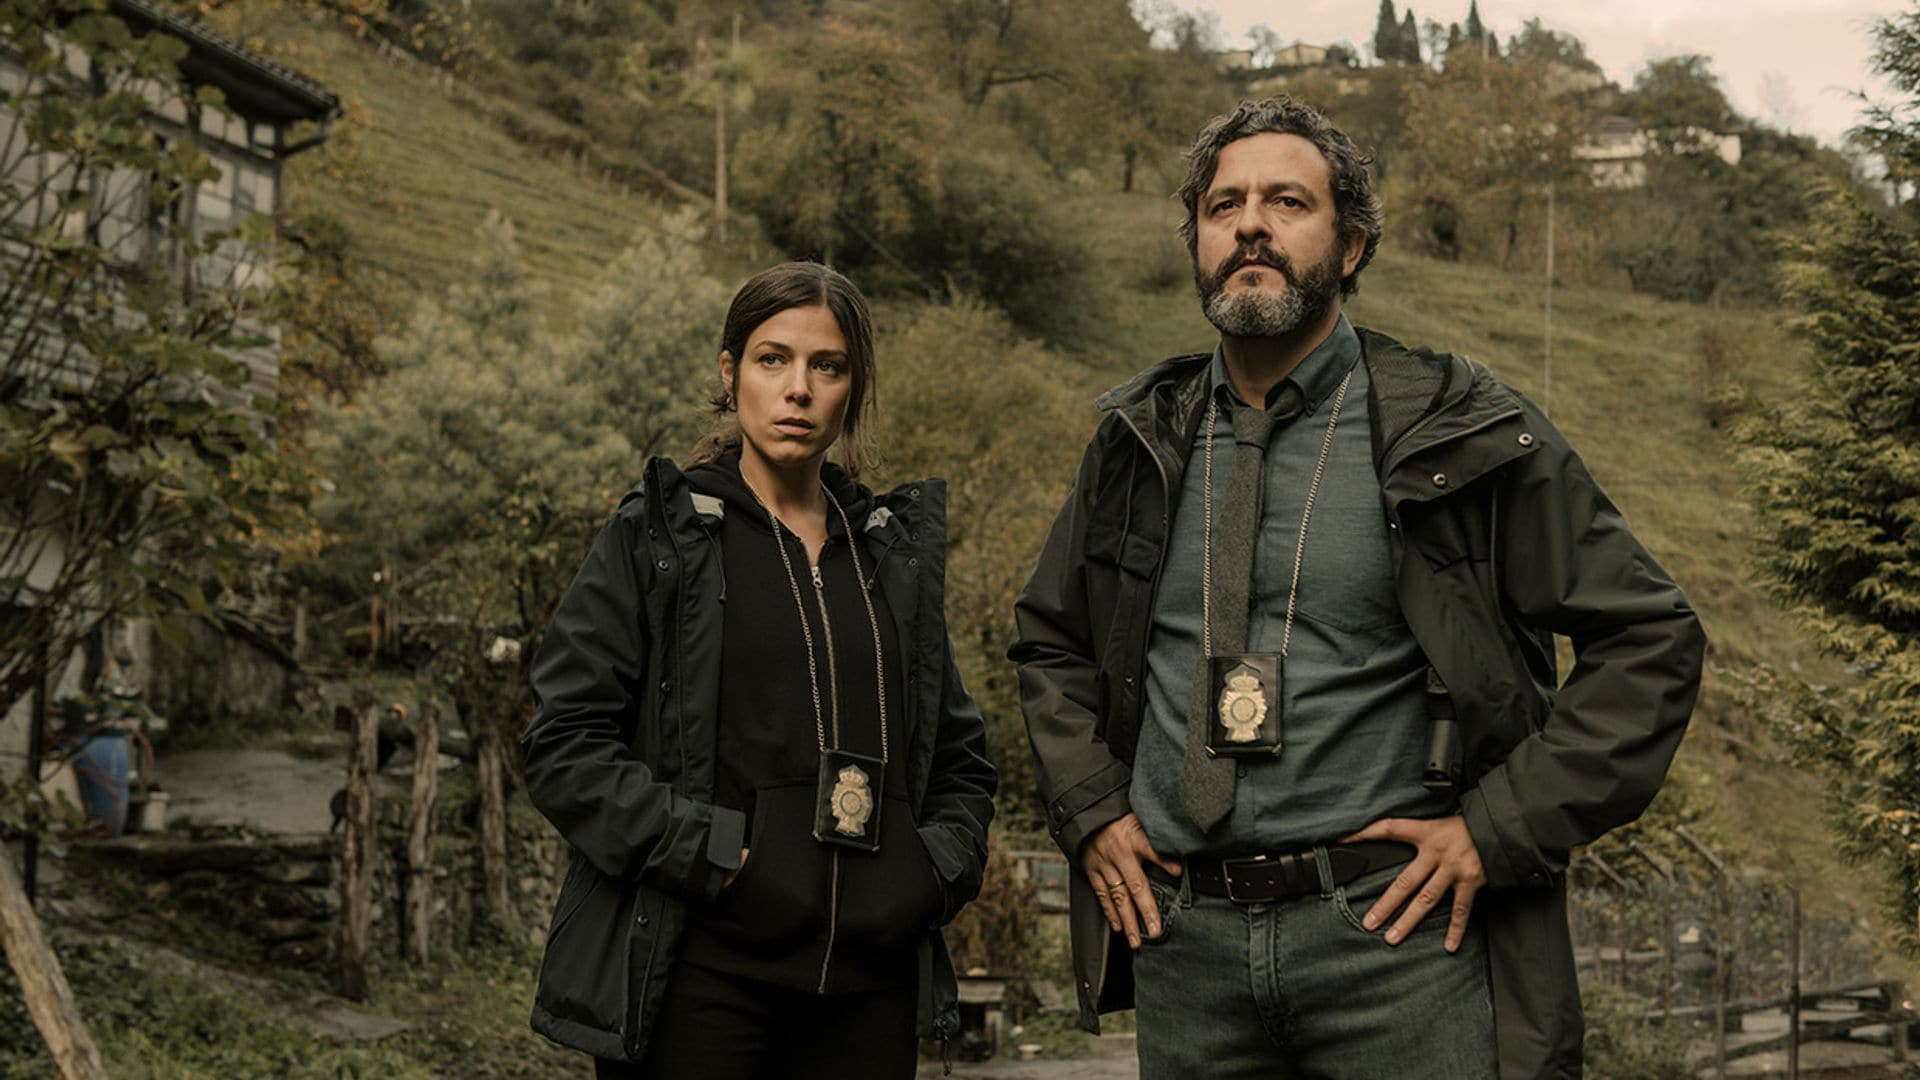 Infiesto, el thriller policíaco de Netflix que nos traslada a Asturias